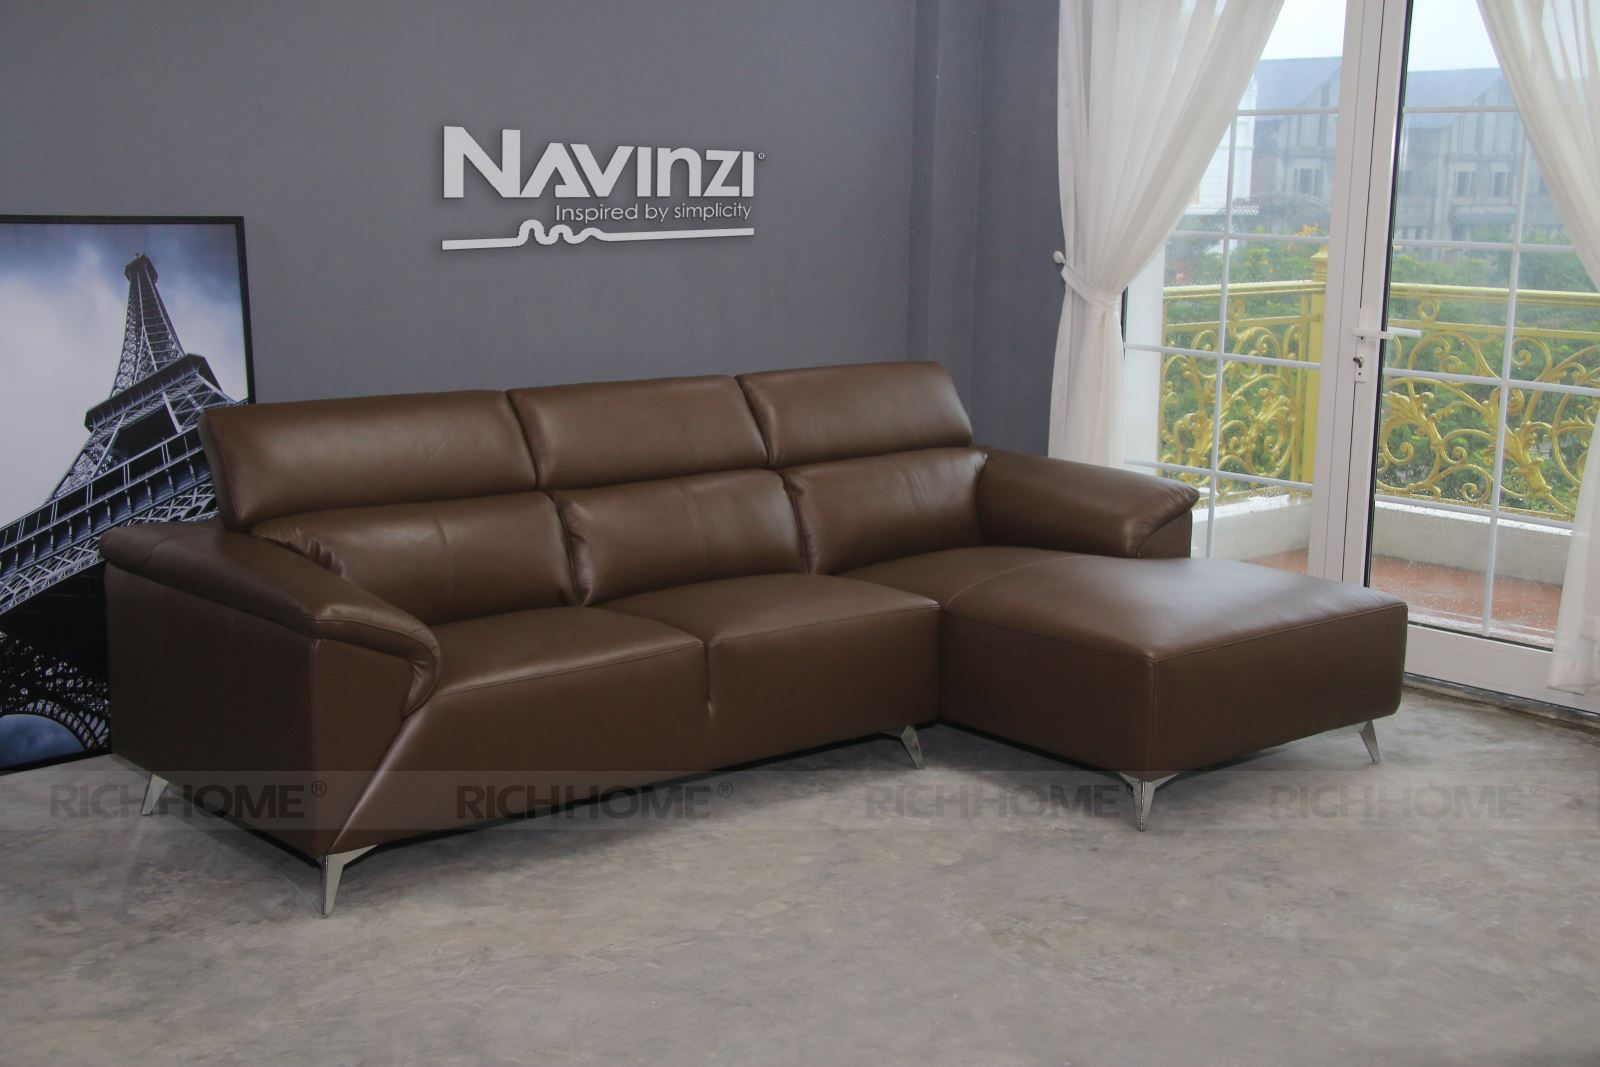 Cách bảo quản ghế sofa da bền vững theo thời gian - Ảnh 2